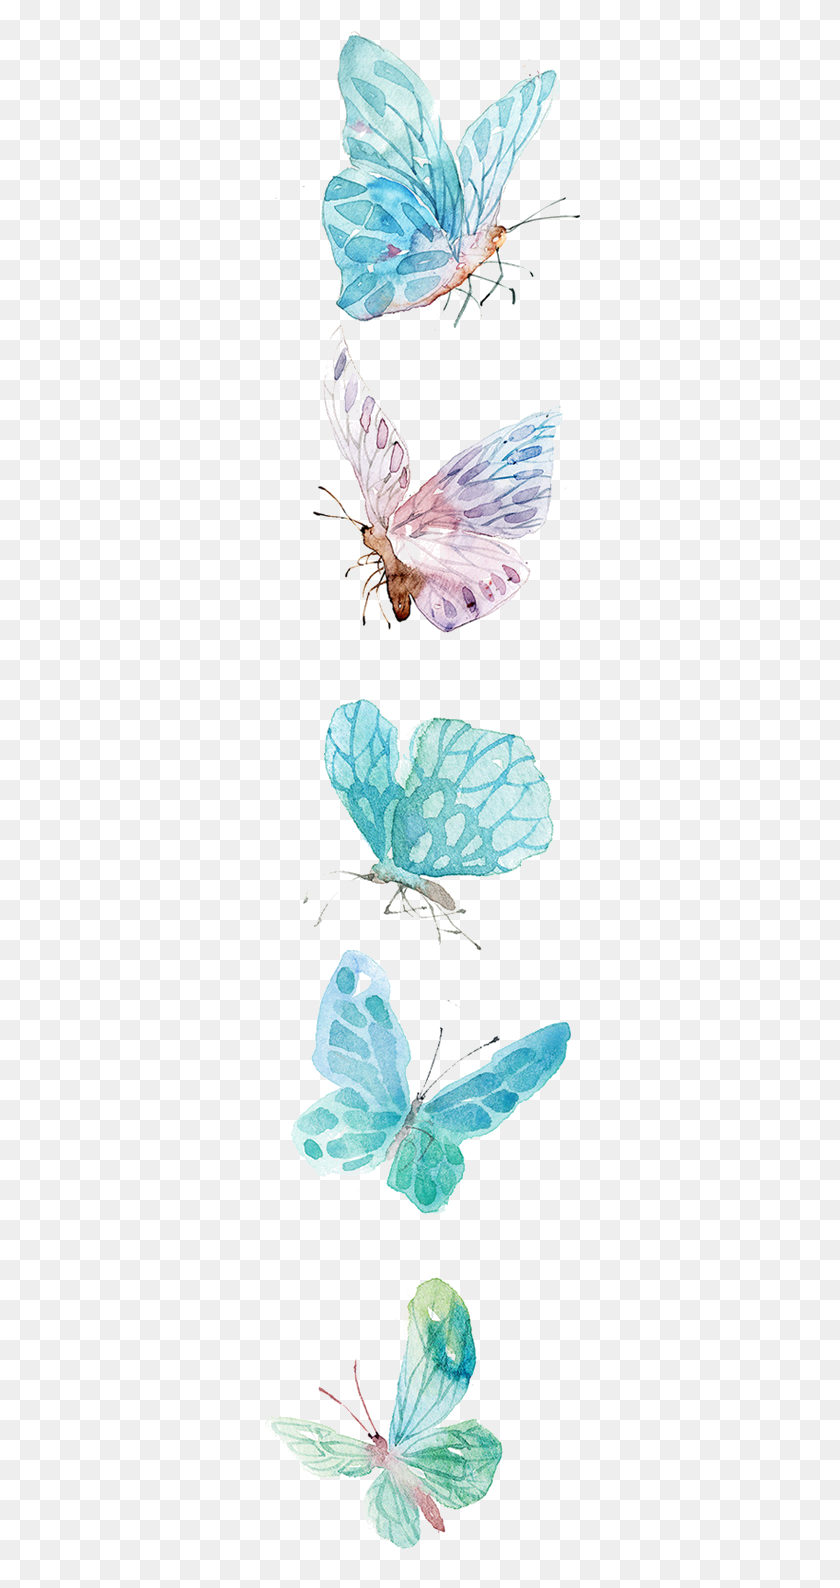 323x1528 Imagenes De Azules Con Mariposa, Insectos, Invertebrados, Animal Hd Png